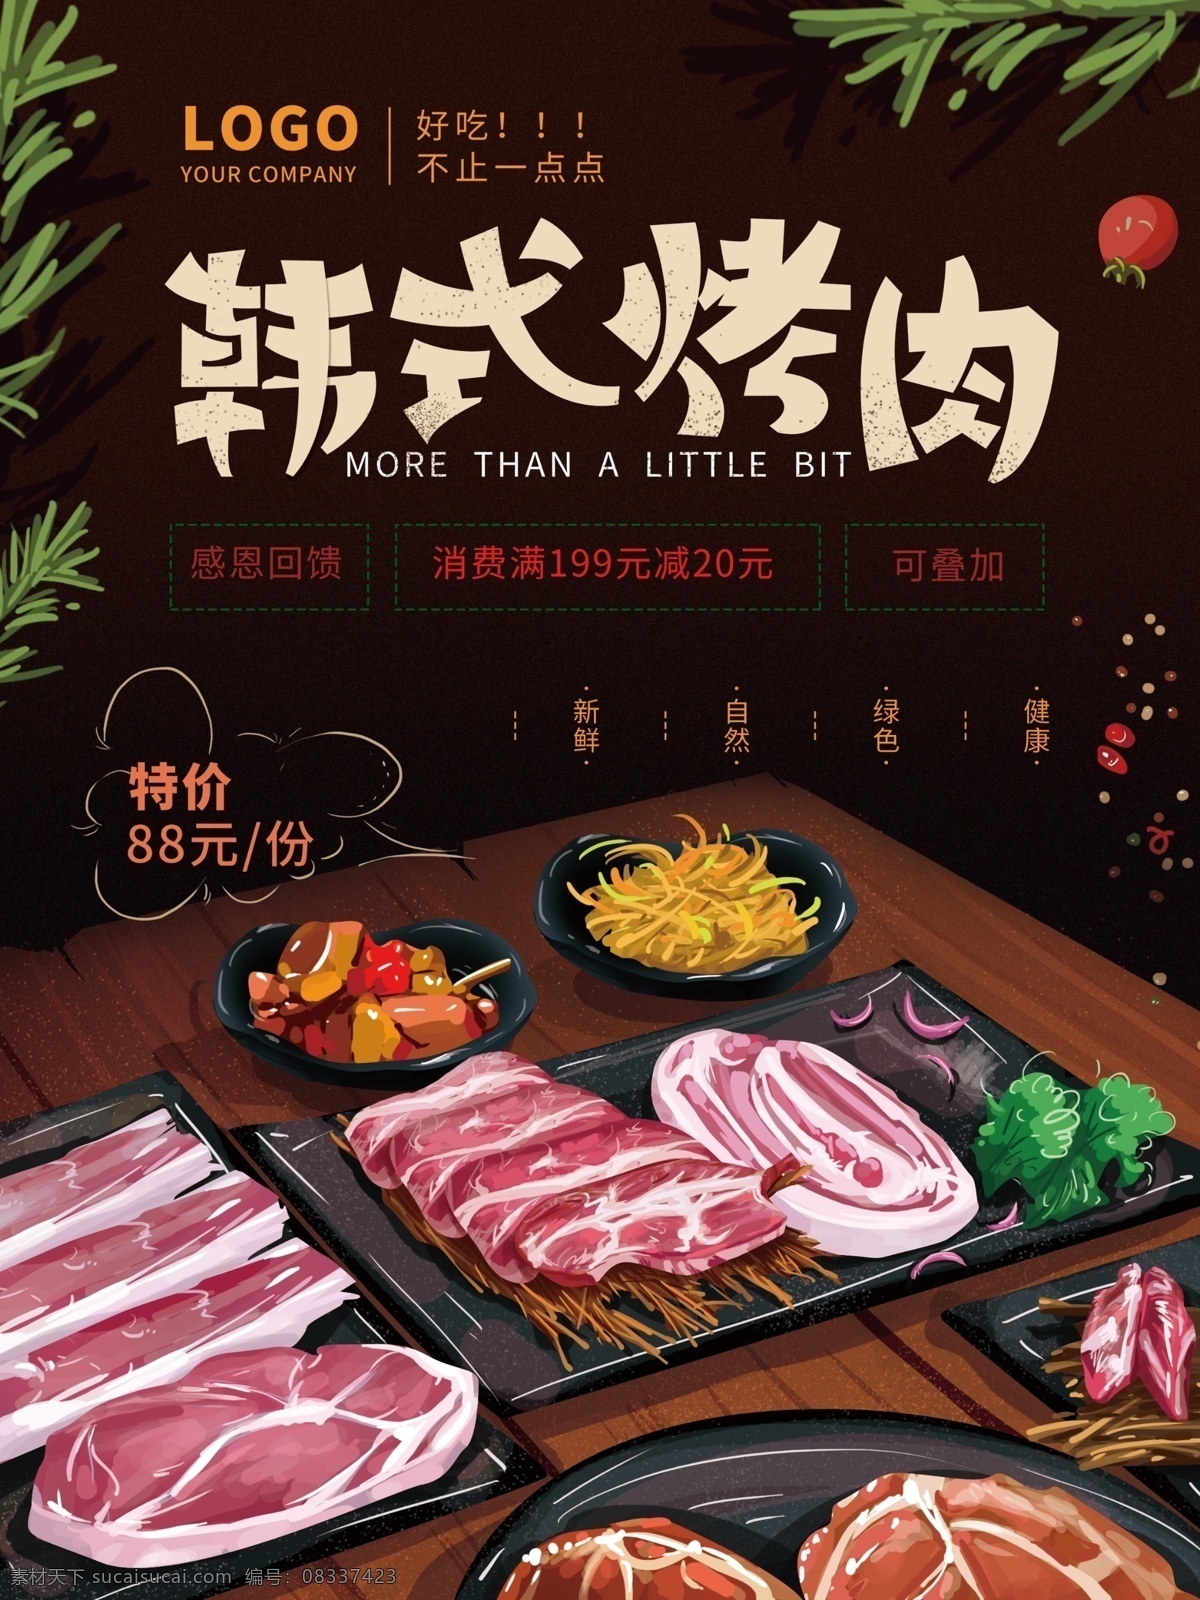 原创 手绘 简约 韩式 烤肉 海报 美食 叶子 蔬菜